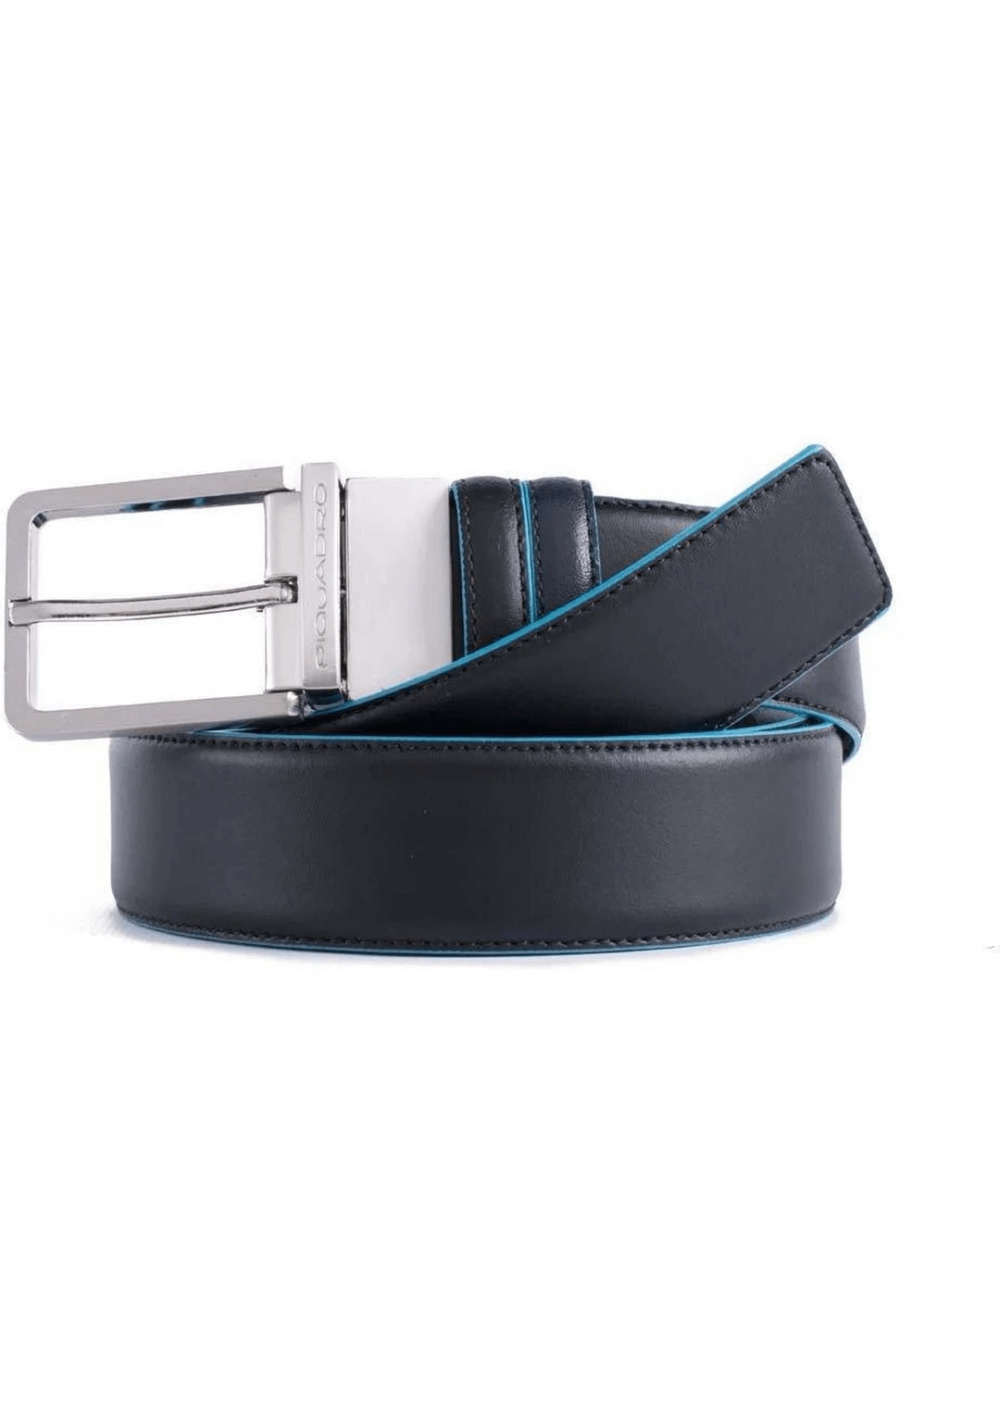 PIQUADRO - Cintura reversibile con fibbia ad ardiglione in pelle B2 Blue Square Nero/Blu outlet online Gift42 Boutique Rimini